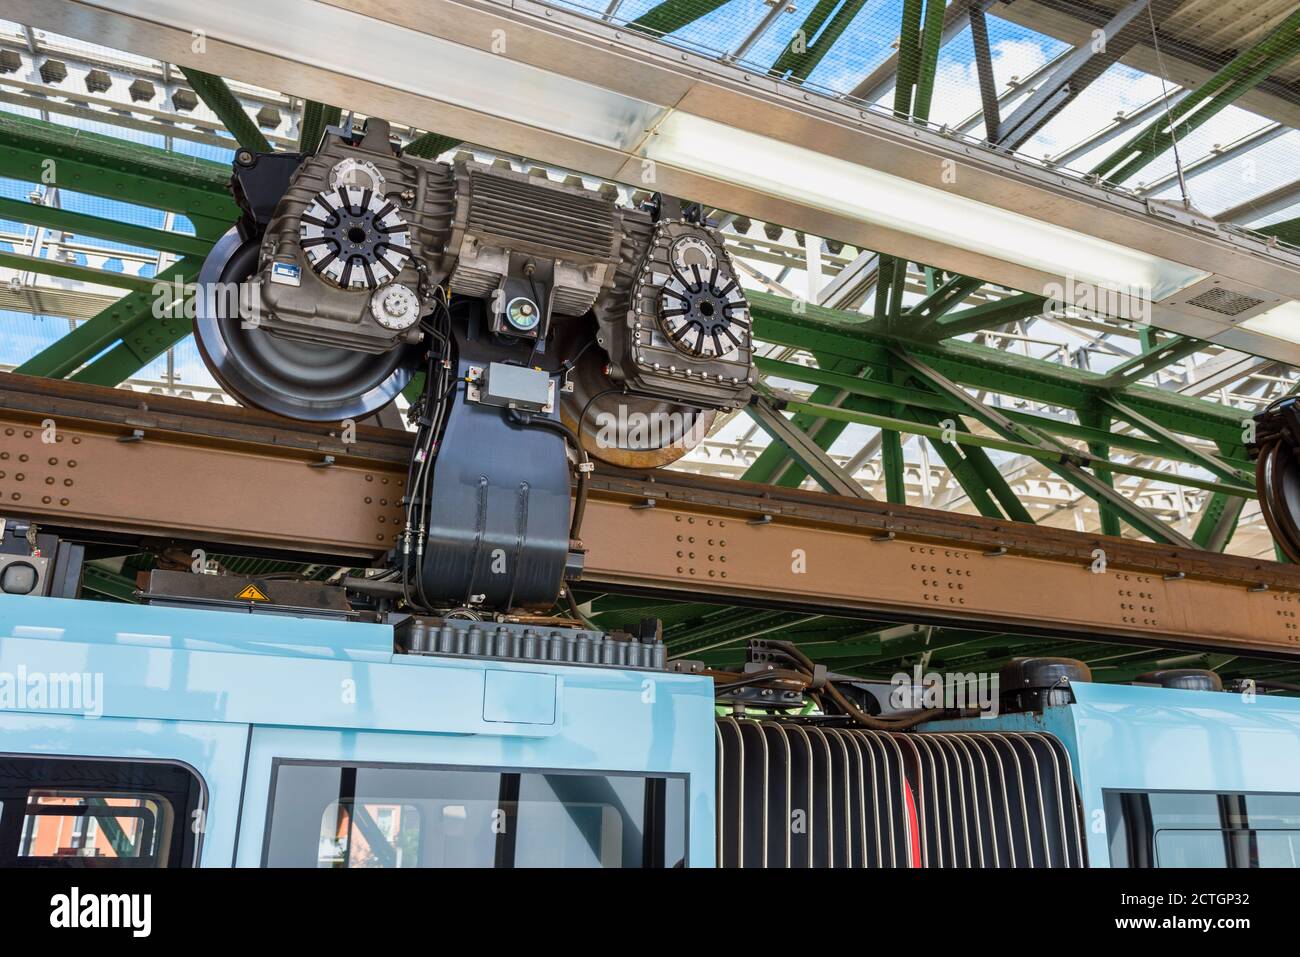 Suspender, moteur et roues d'un train Schwebebahn à Wuppertal en Allemagne Banque D'Images